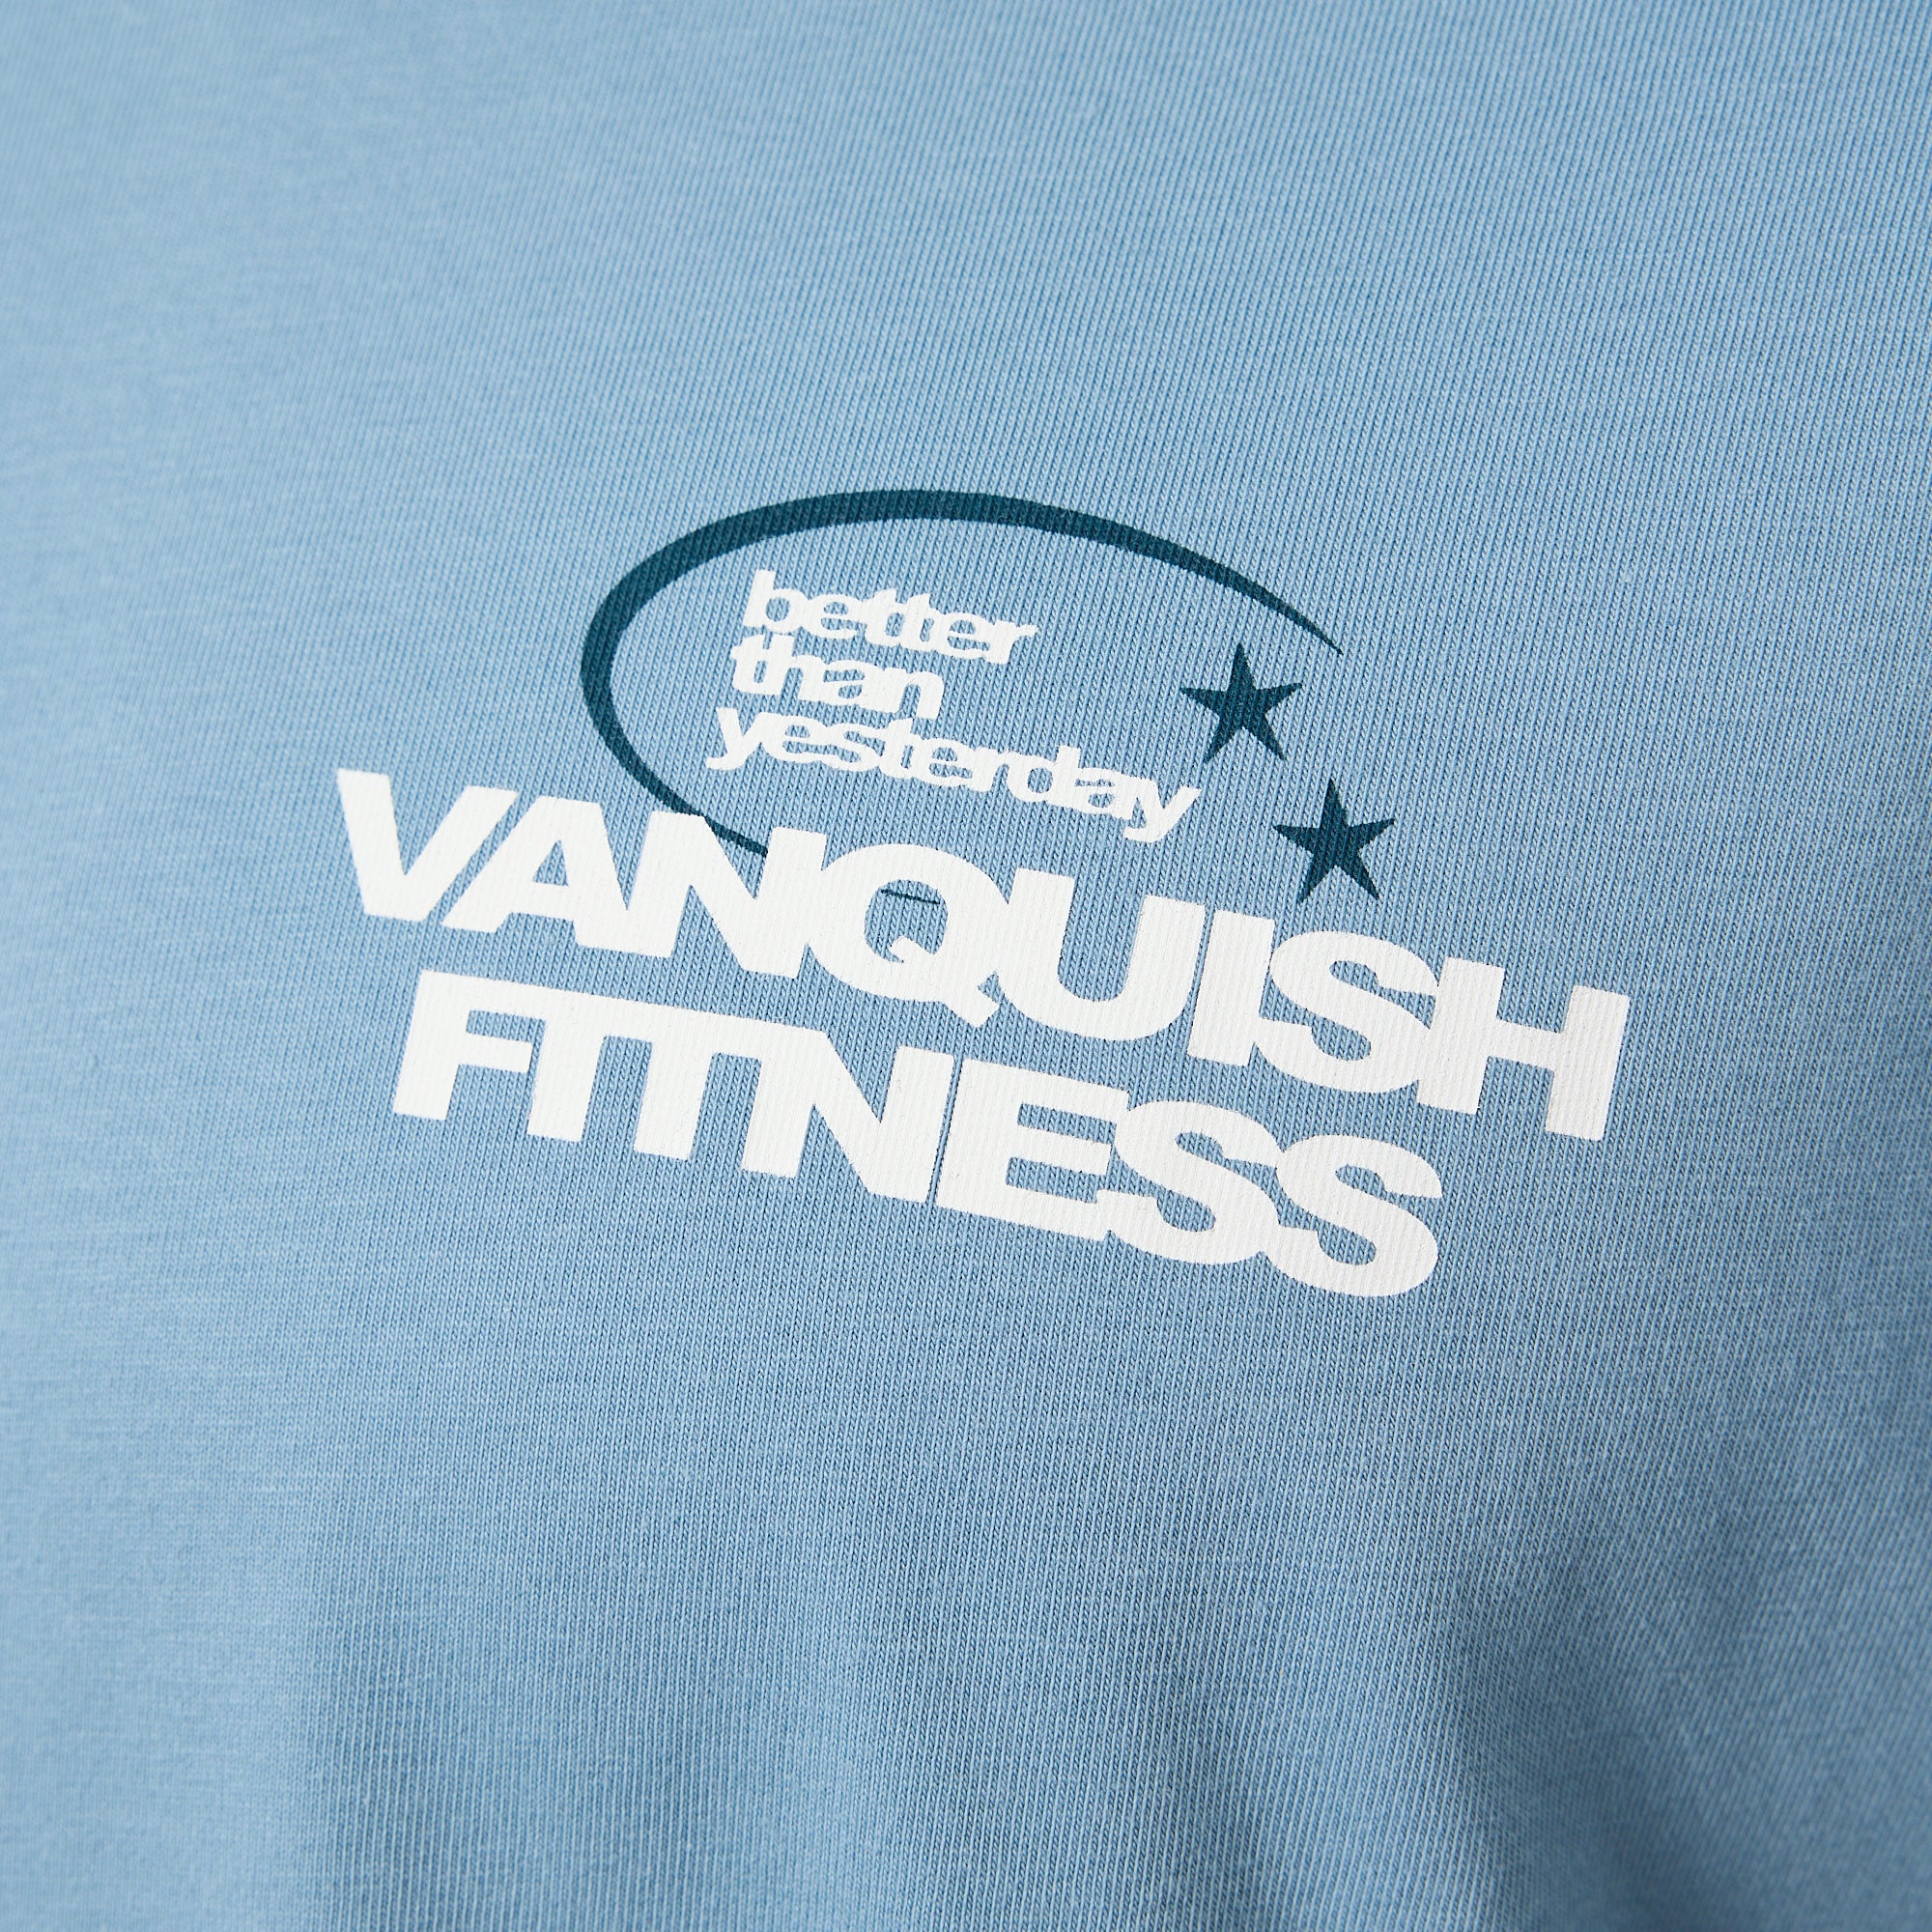 Vanquish TSP Since 2015 Blue Oversized T Shirt